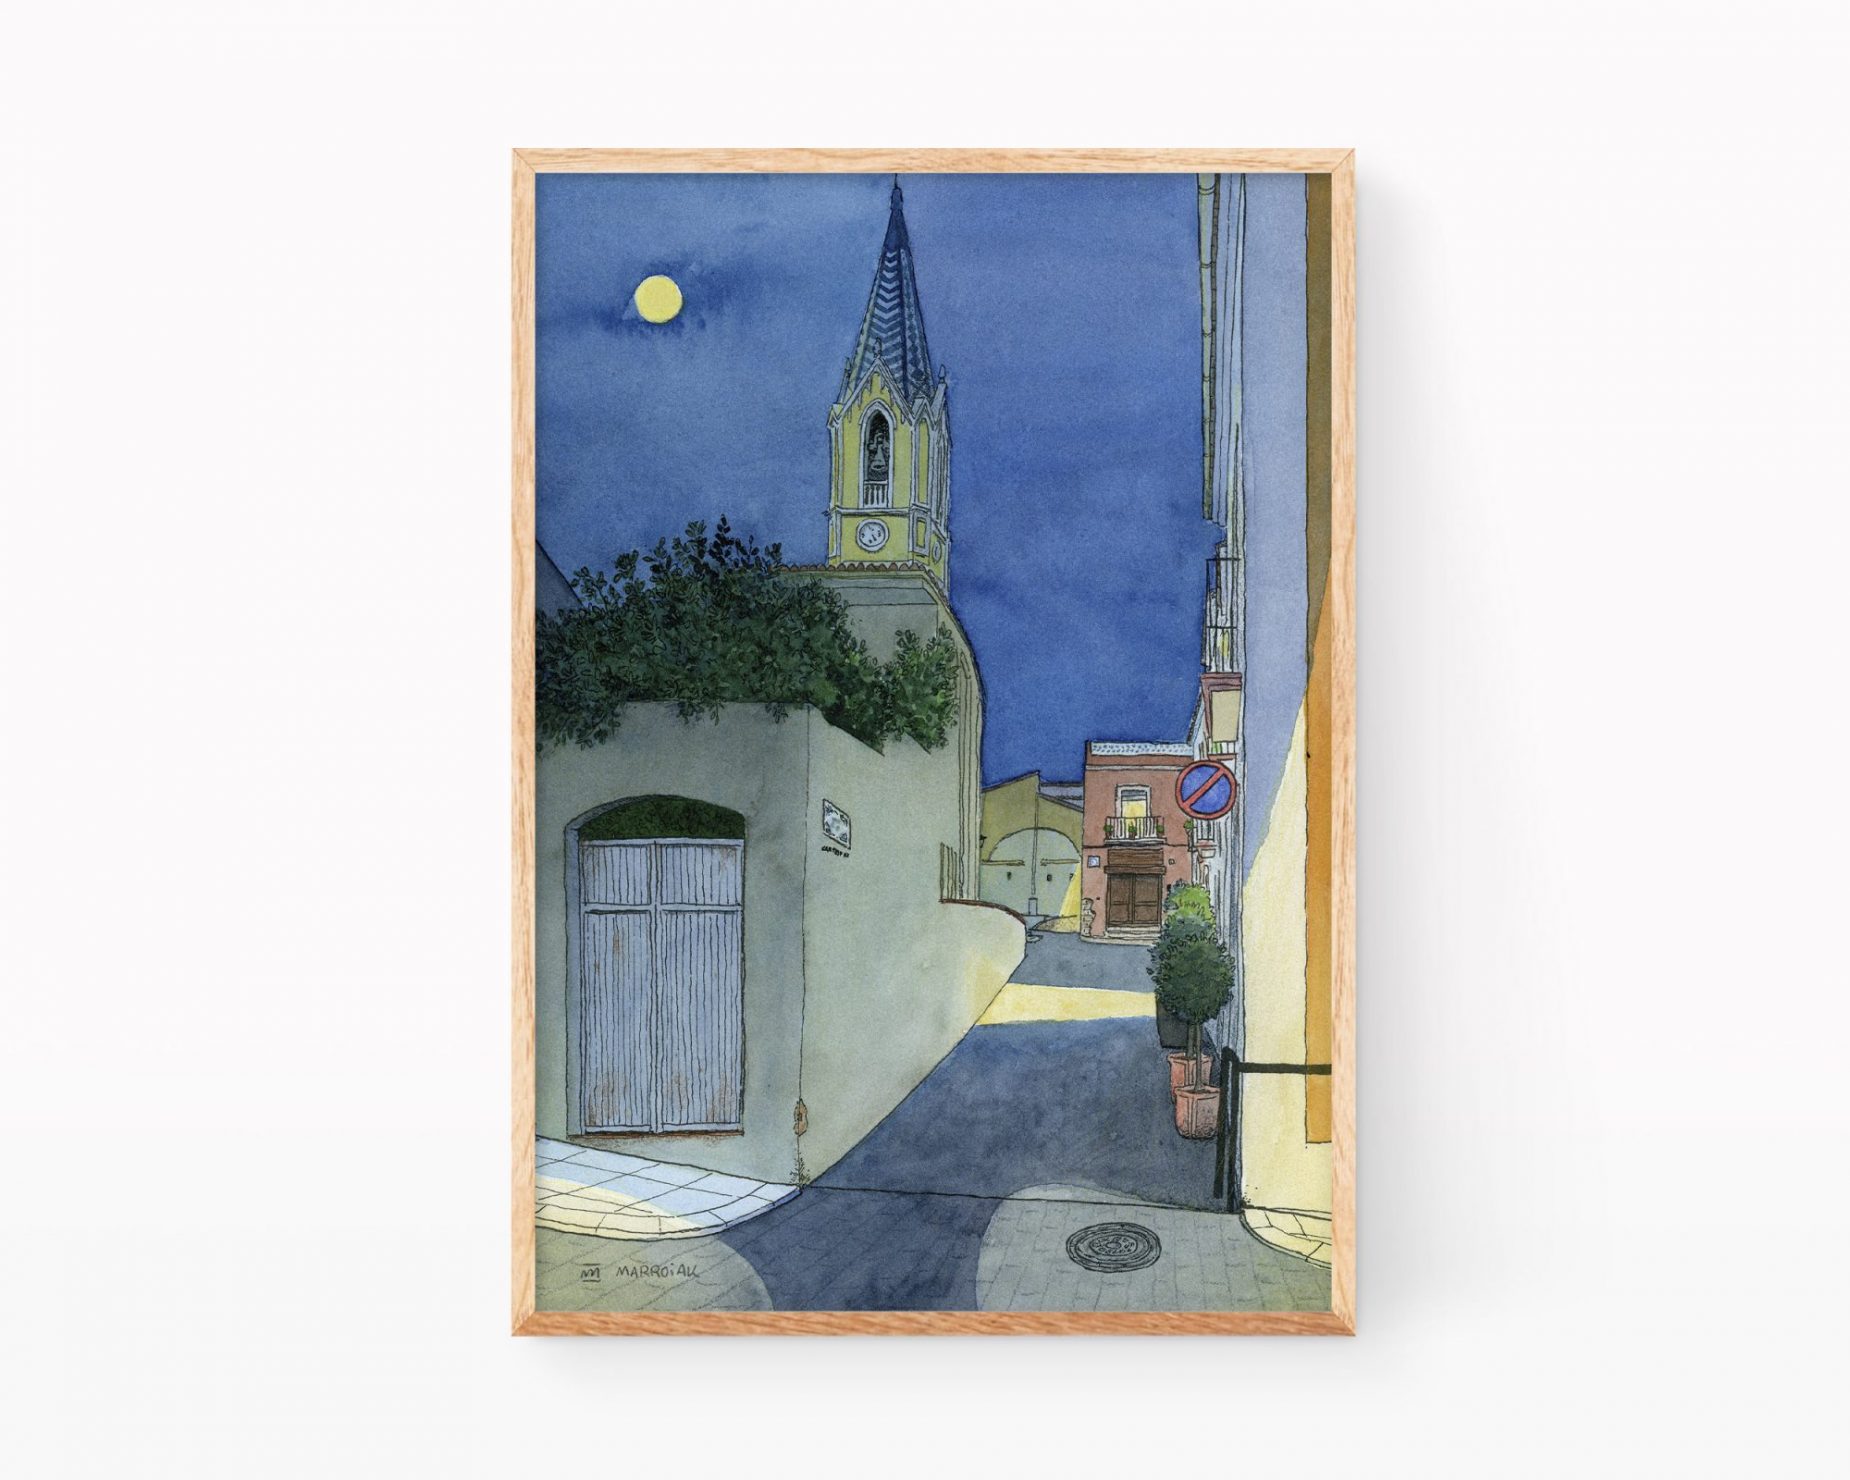 Dibujos y fotos de pueblos de Valencia. Lámina con ilustración de una calle y la iglesia de Palma de Gandía, municipio de la Safor de noche